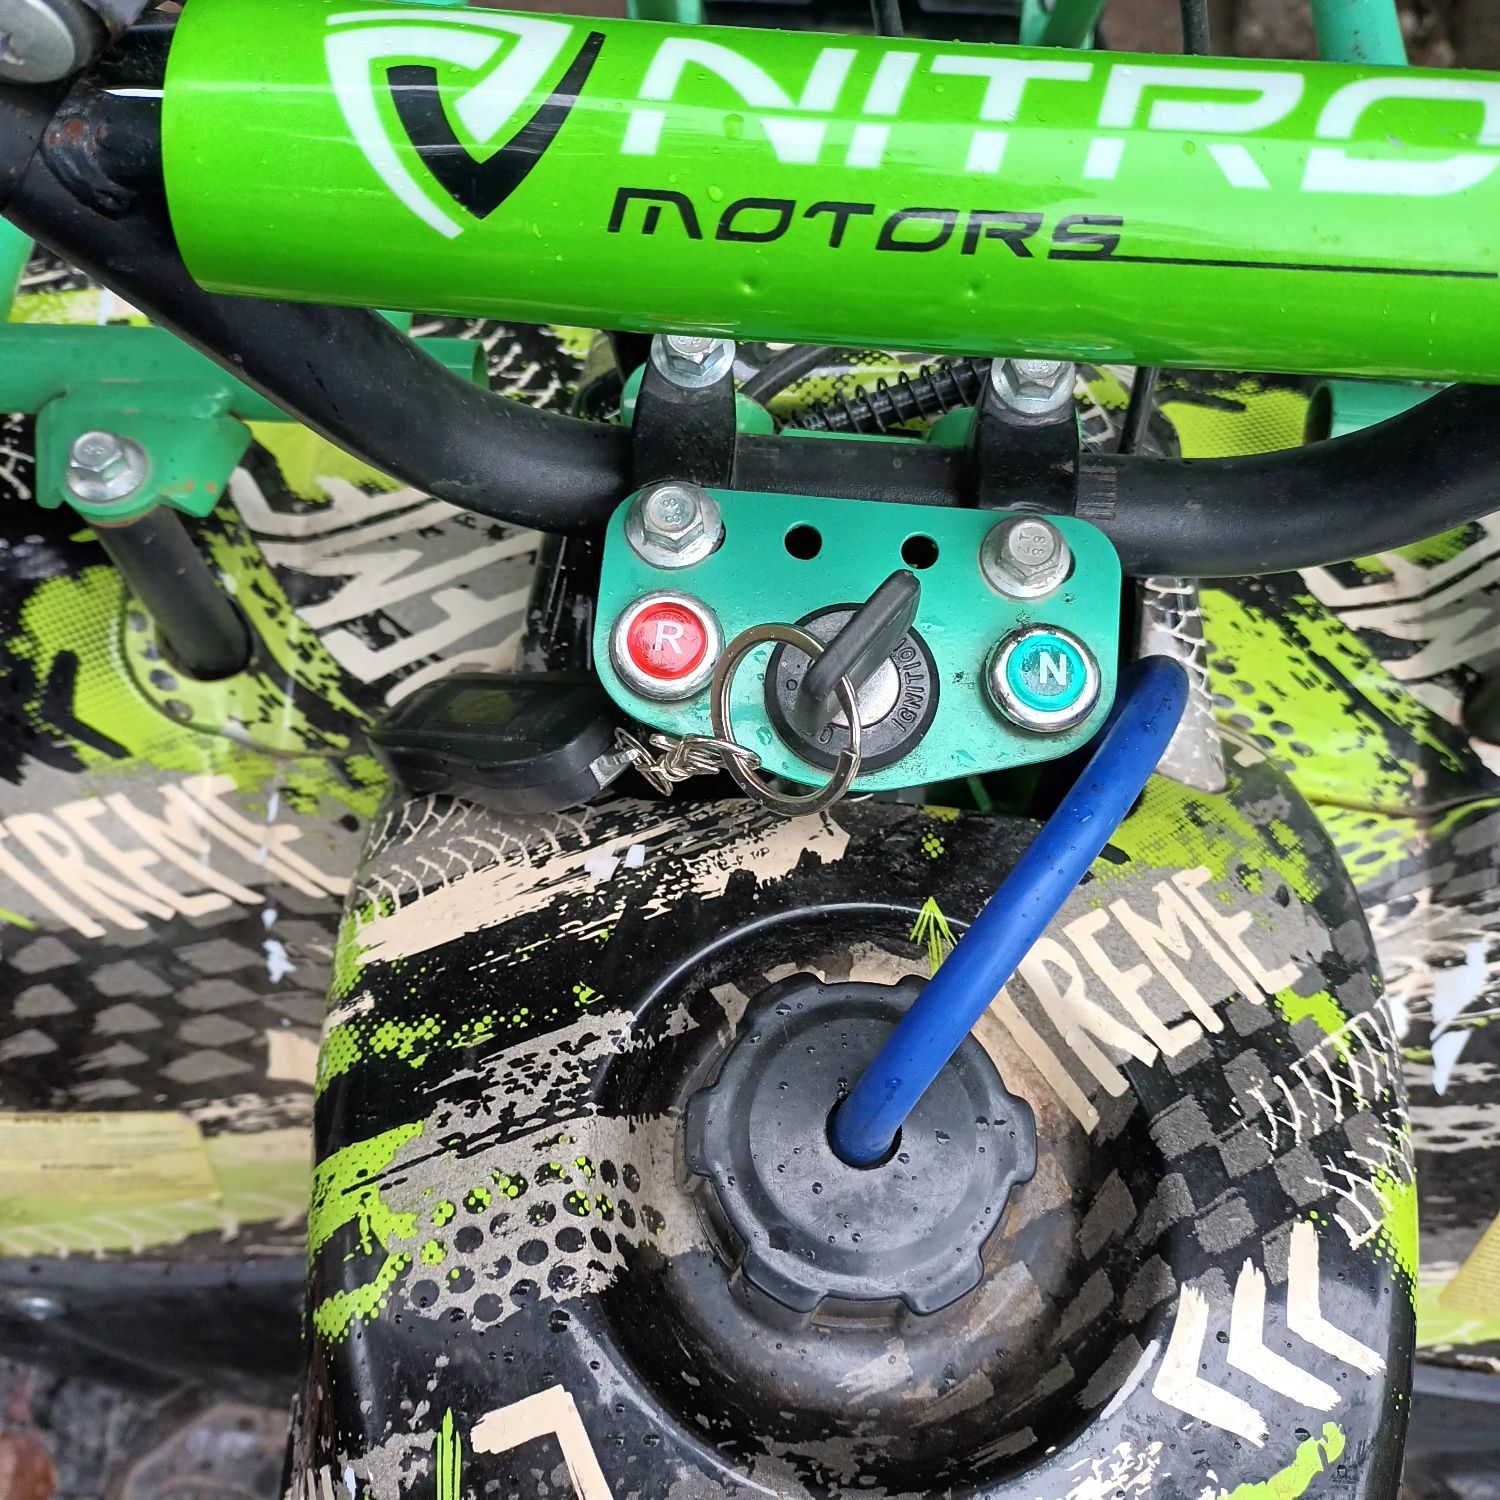 ATV-Toronto RS nitro motors